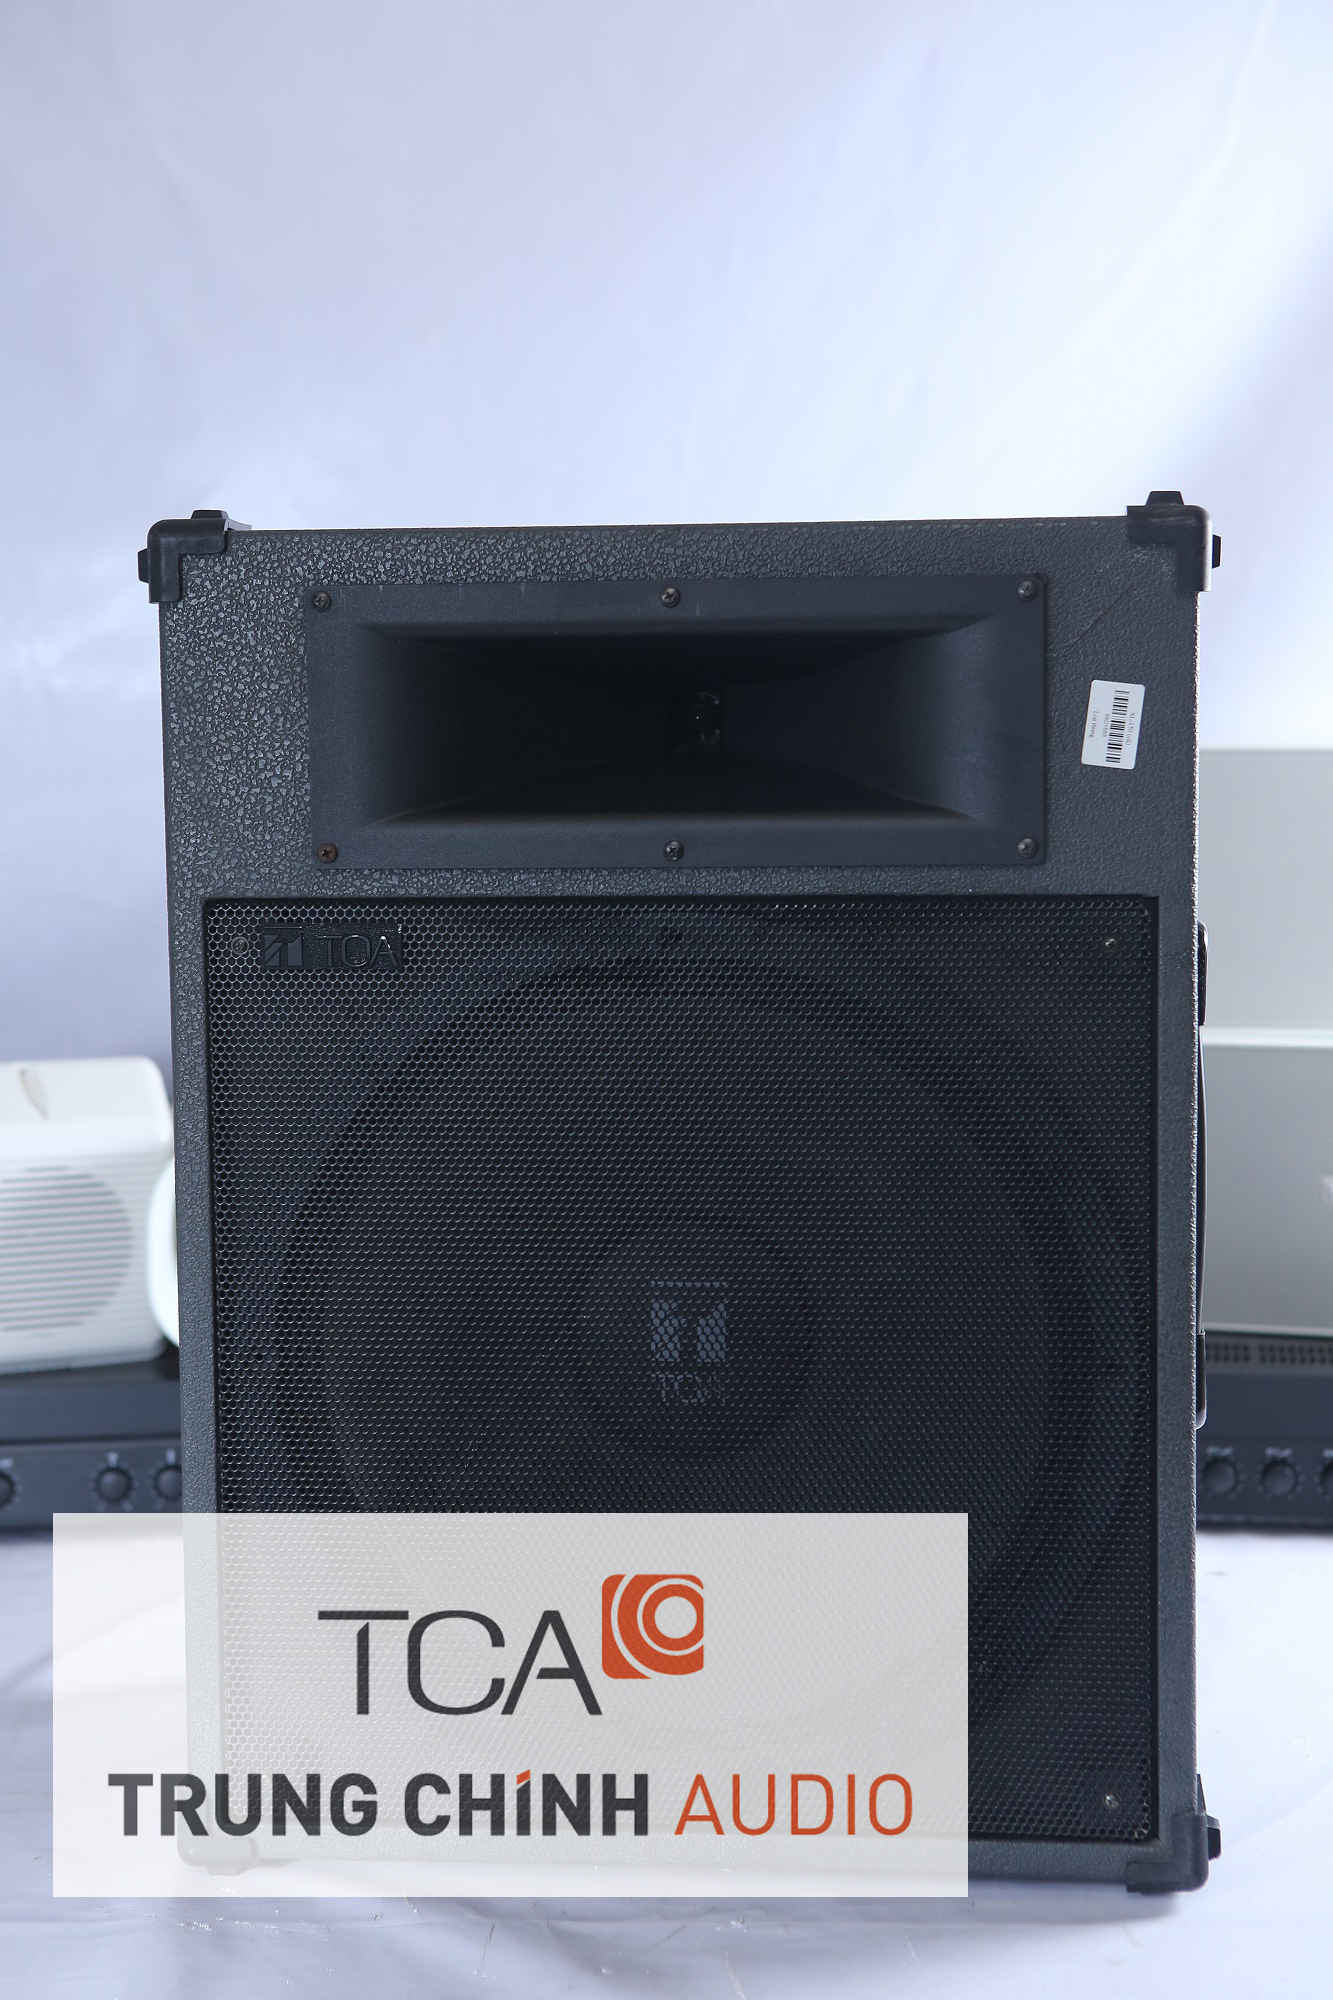 Loa công suất TOA SL-150 chính hãng của TOA phân phối tại Trung Chính Audio với giá tốt nhất